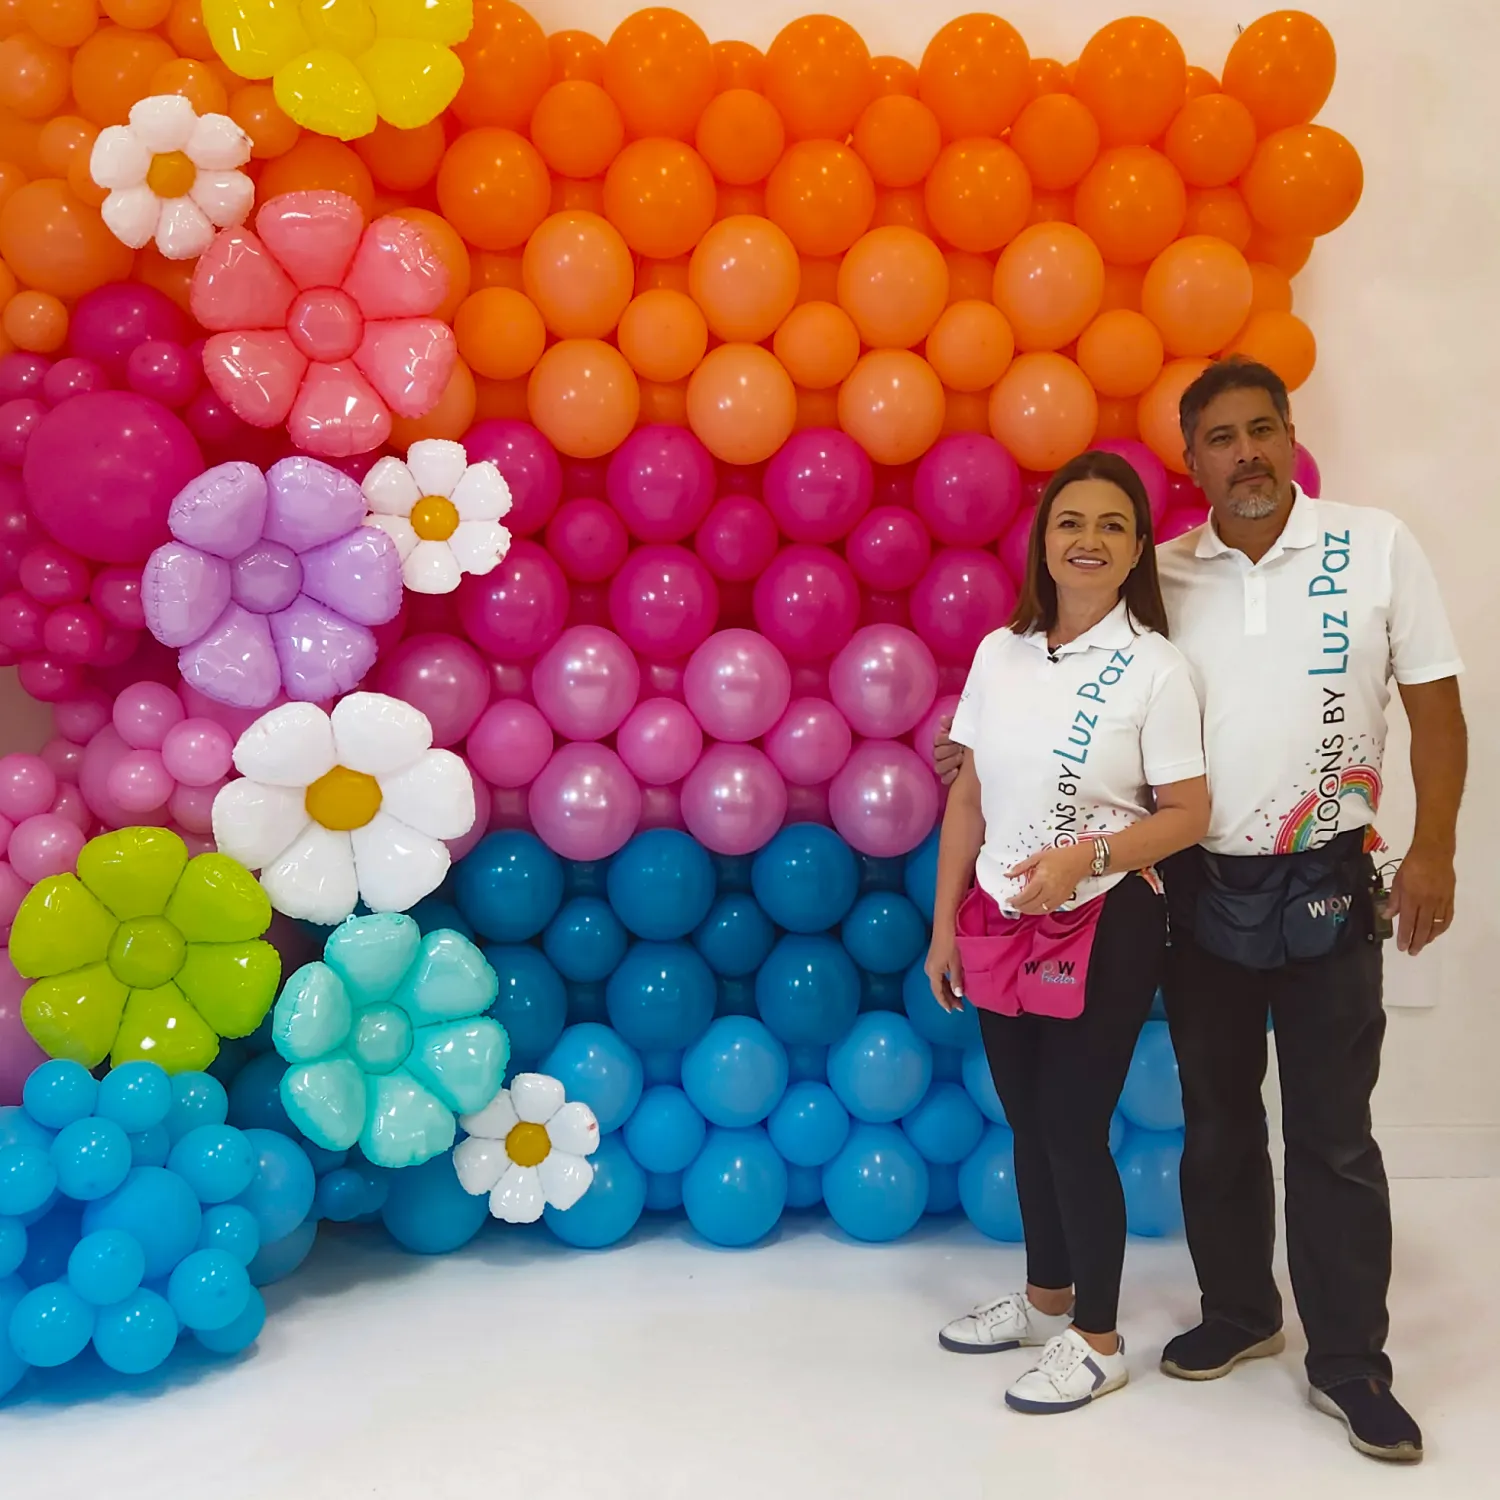 ANTES DE CRISTO. Precioso Telemacos Pared con globos técnica square pack - Balloons by Luz Paz - Academia Online